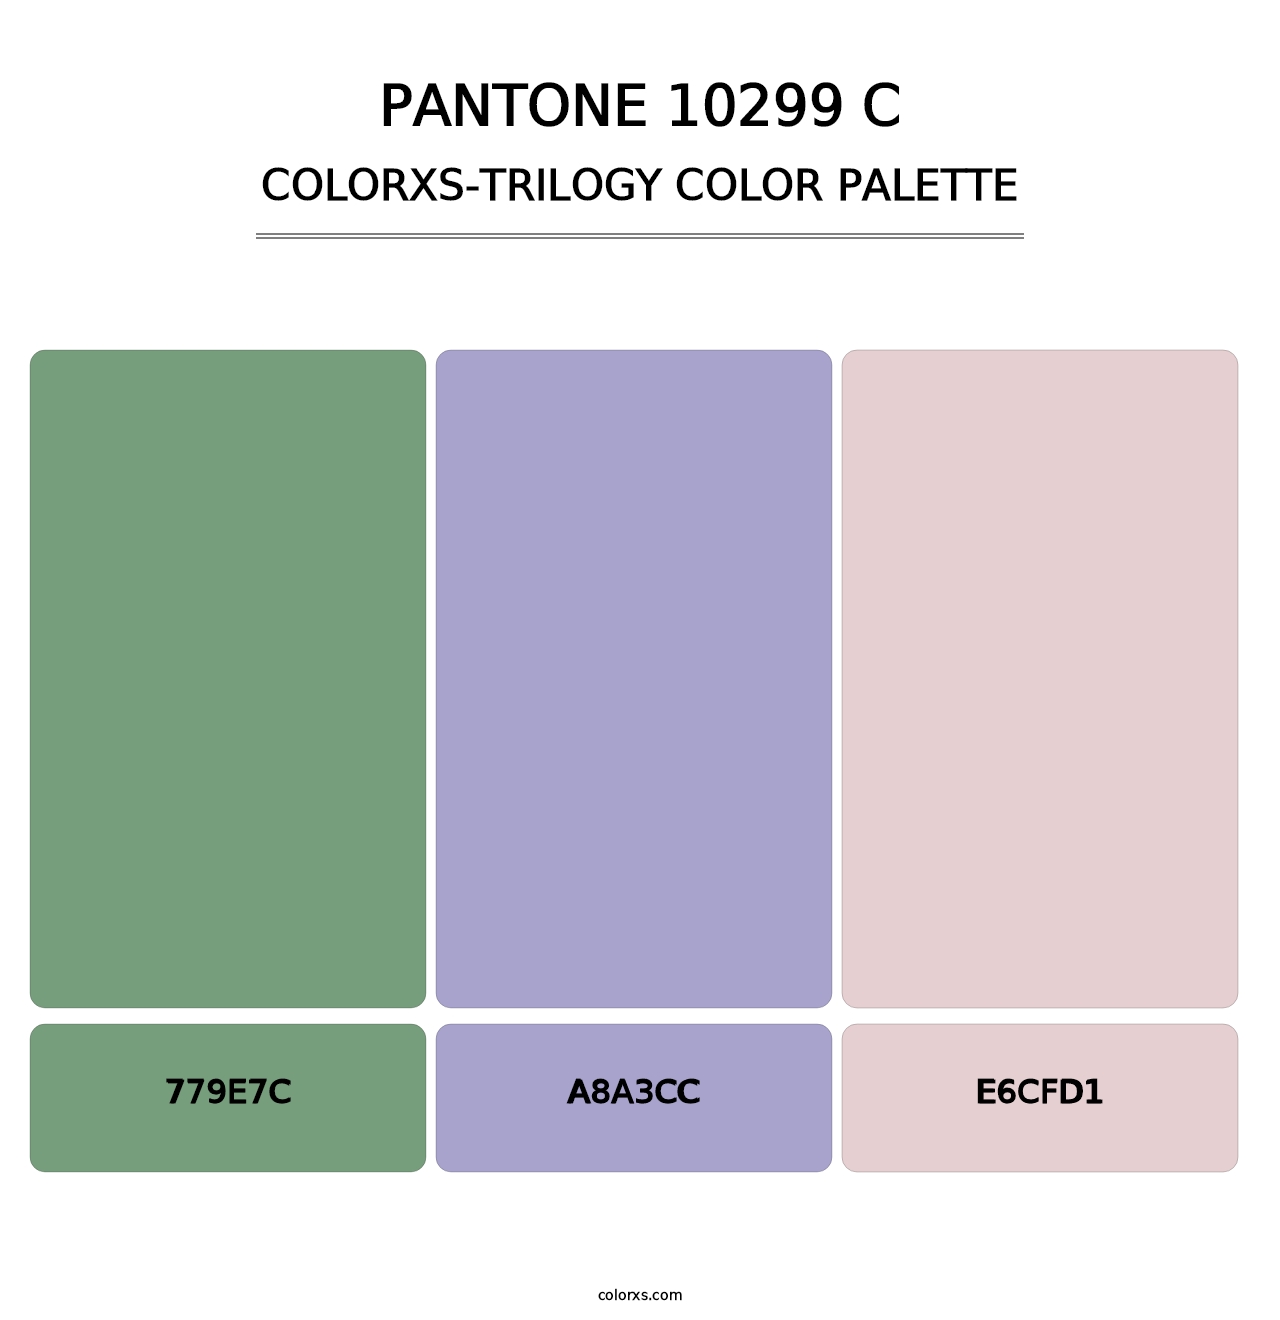 PANTONE 10299 C - Colorxs Trilogy Palette